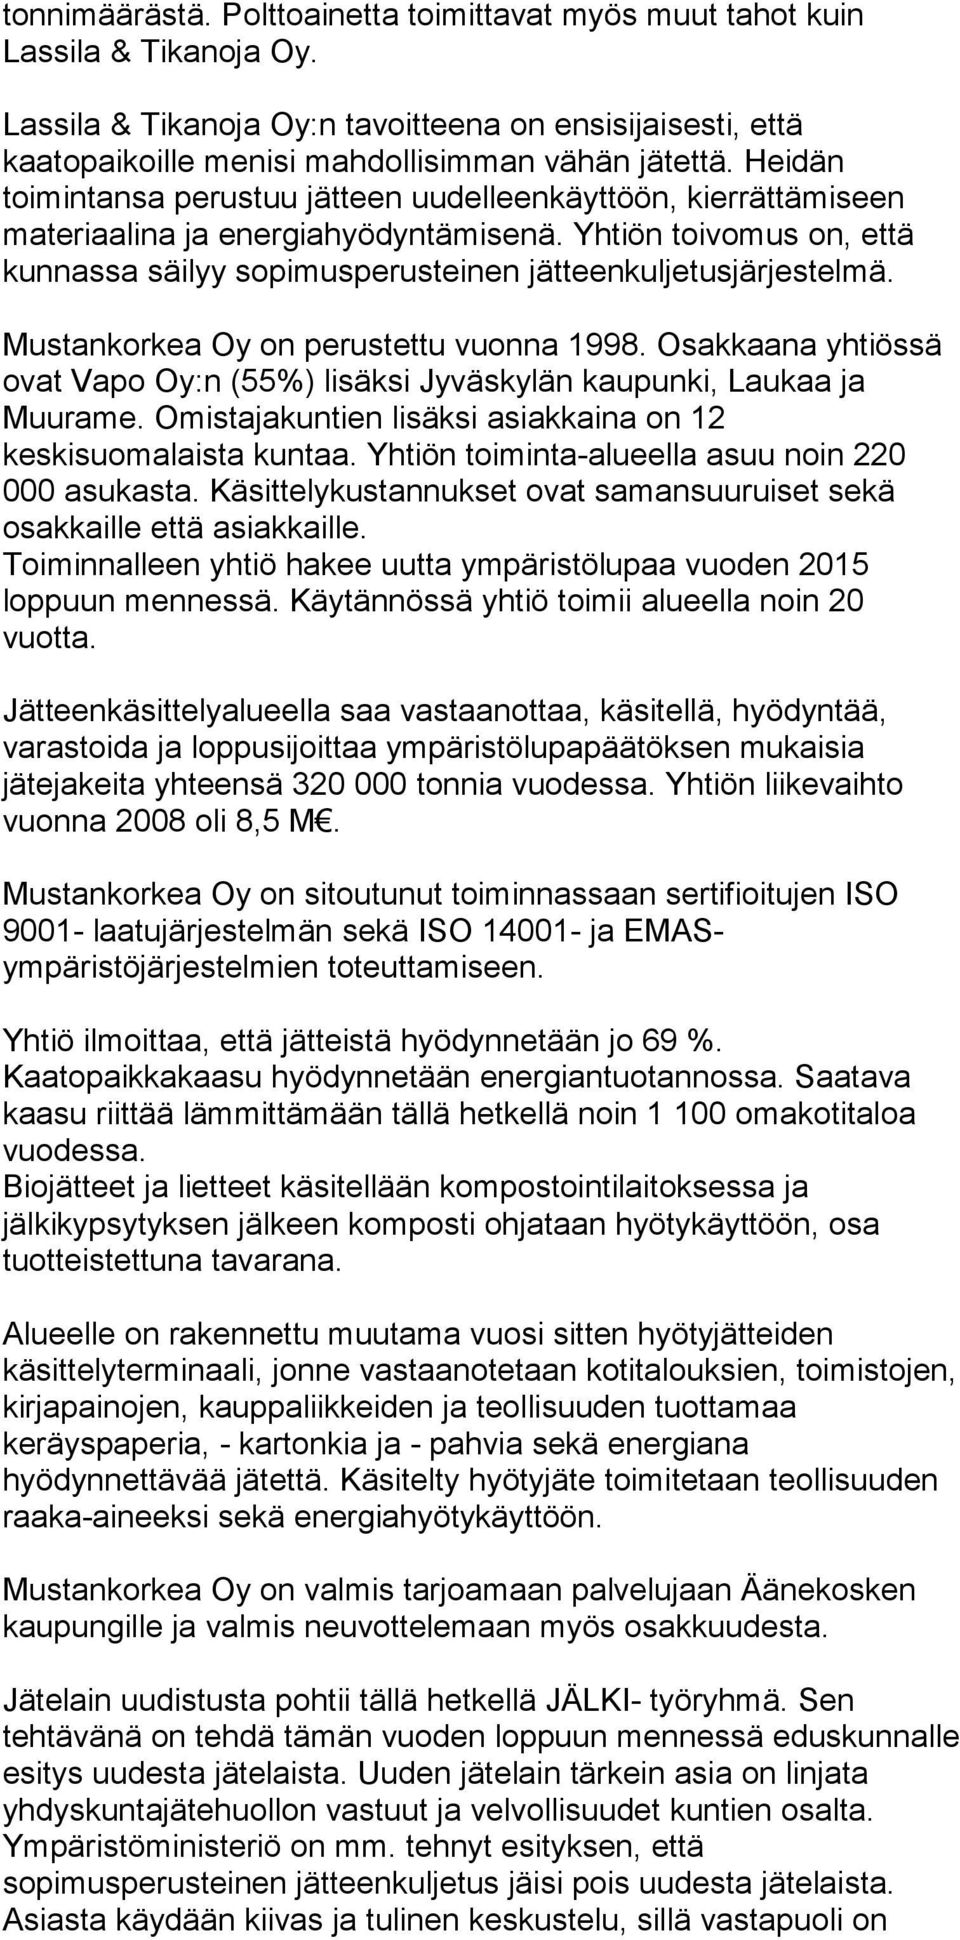 Mustankorkea Oy on perustettu vuonna 1998. Osakkaana yhtiössä ovat Vapo Oy:n (55%) lisäksi Jyväskylän kaupunki, Laukaa ja Muurame. Omistajakuntien lisäksi asiakkaina on 12 keskisuomalaista kuntaa.